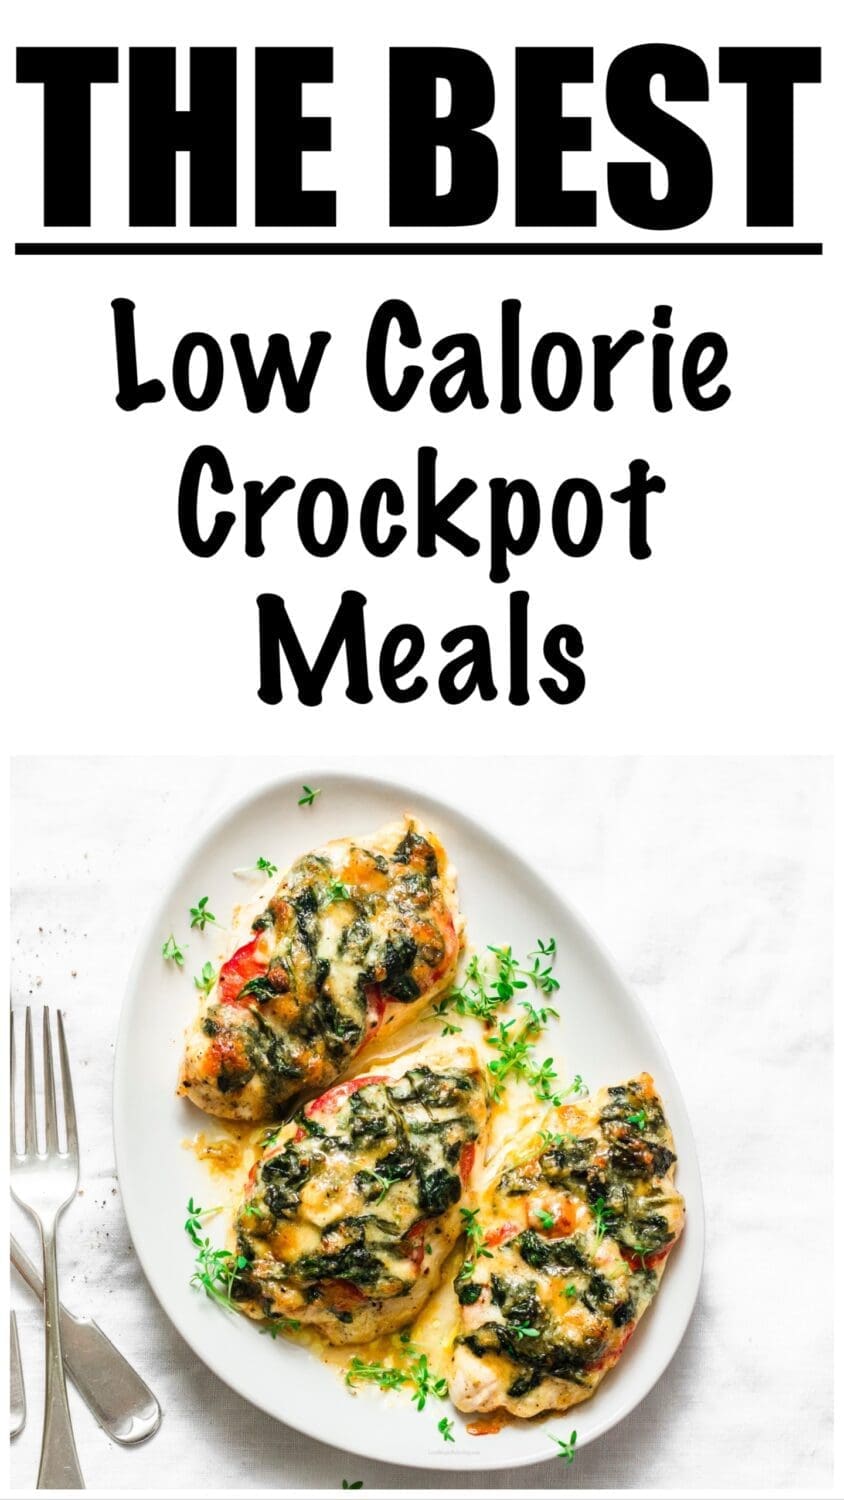 Low Calorie Crockpot Meals